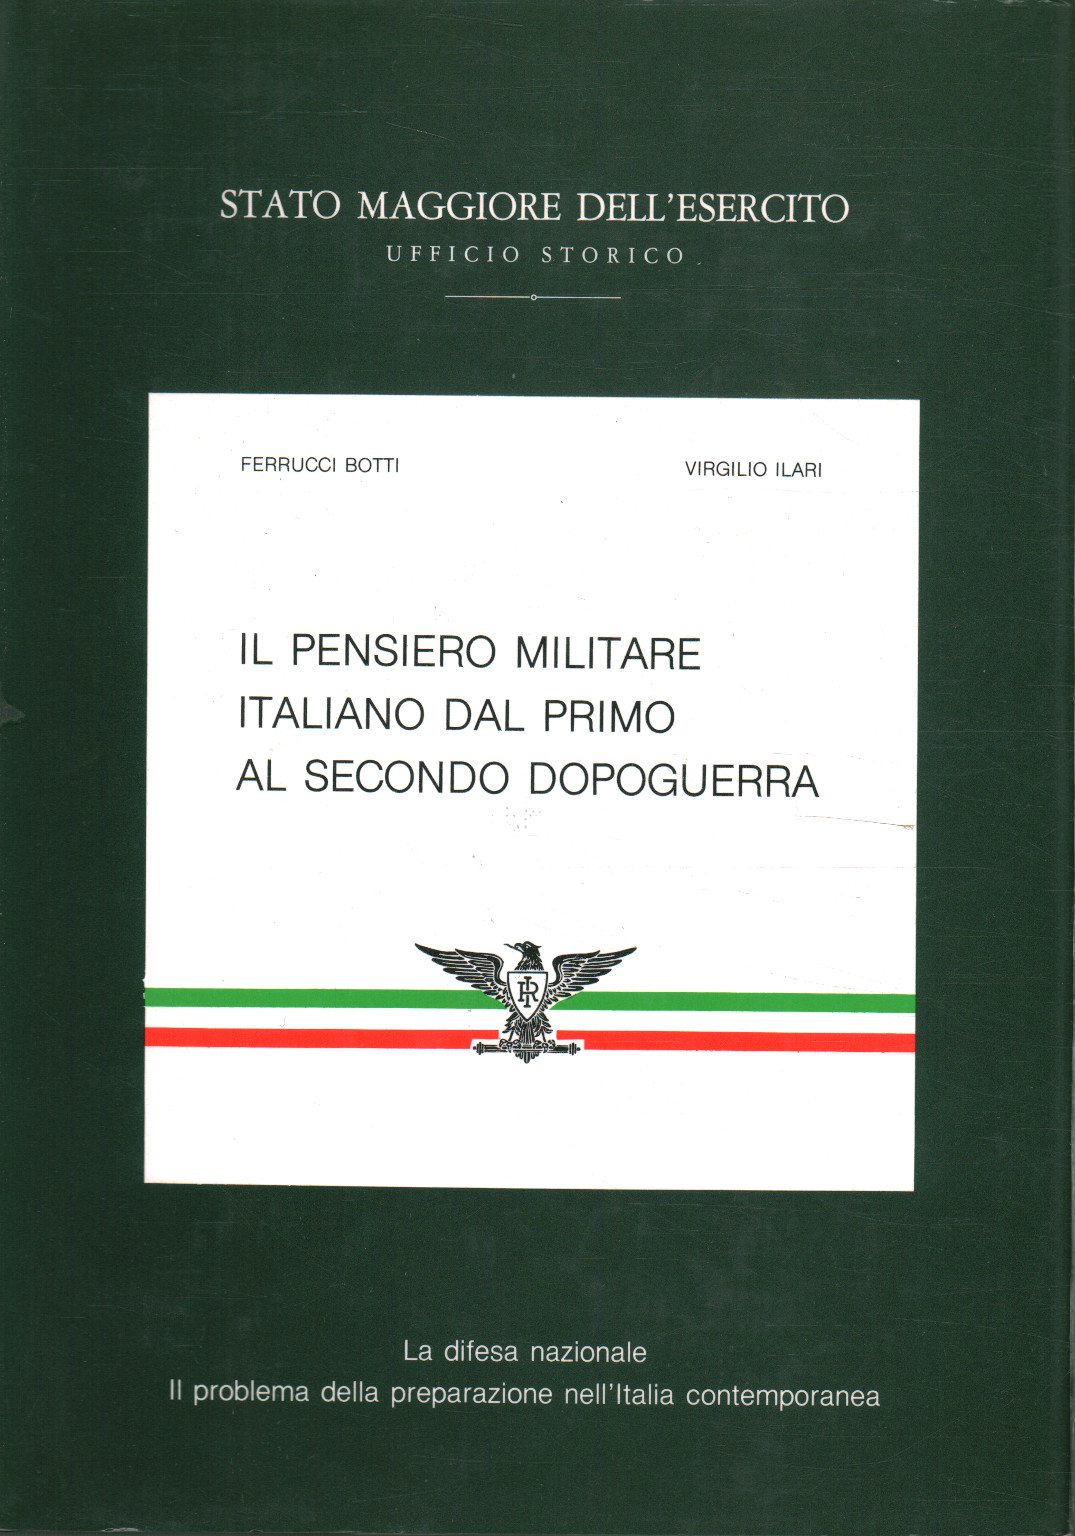 Das italienische Militär dachte von Anfang an%, Das italienische Militär dachte von Anfang an%, Das italienische Militär dachte von Anfang an%